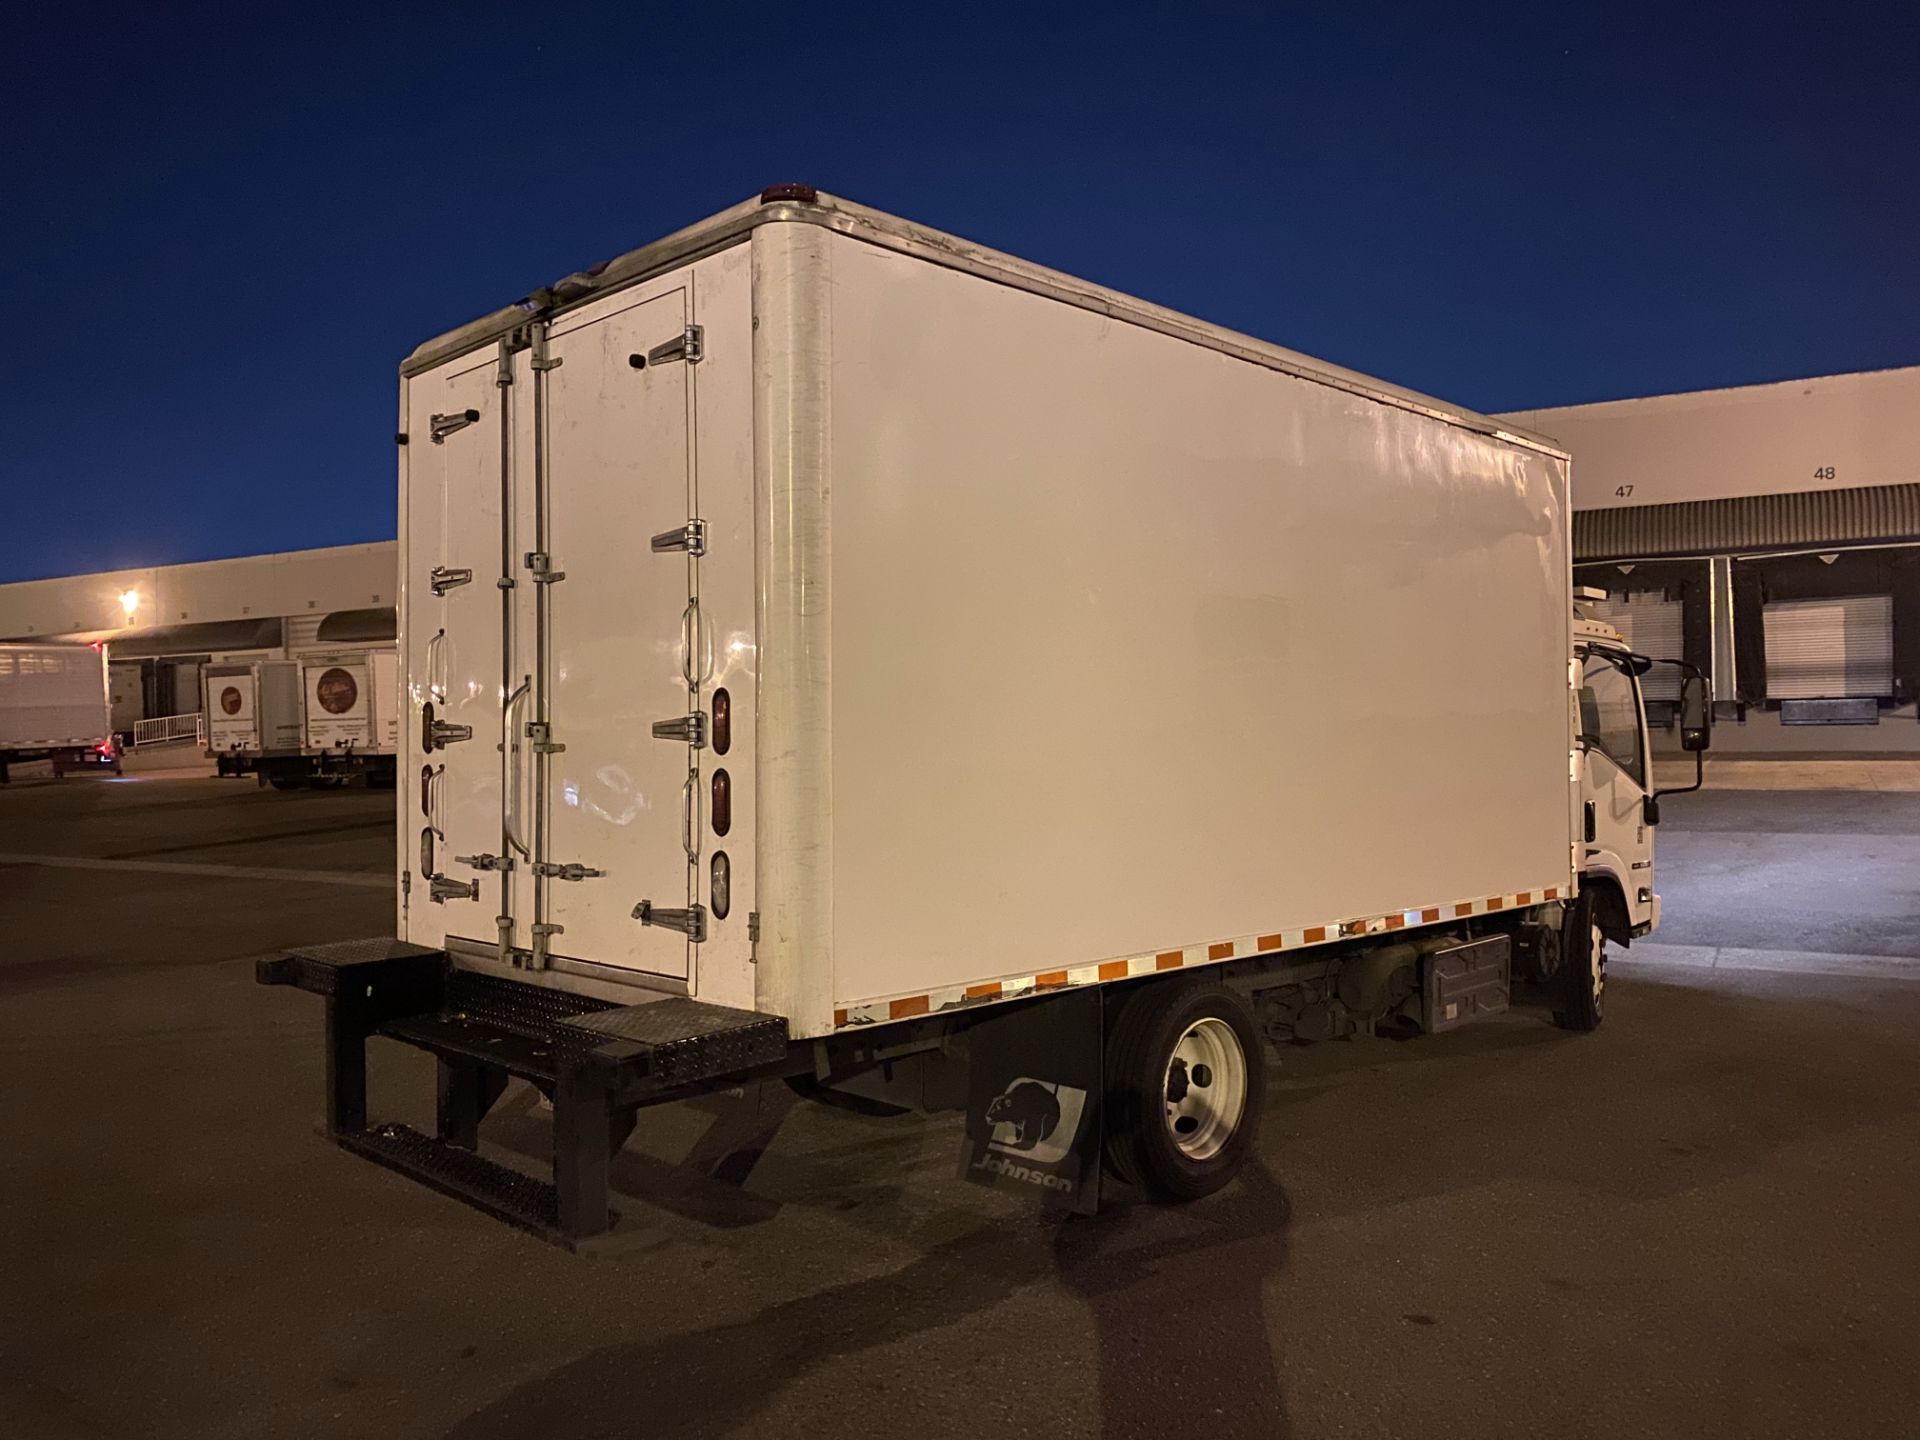 2013 Isuzu refrigerated truck - Image 3 of 9